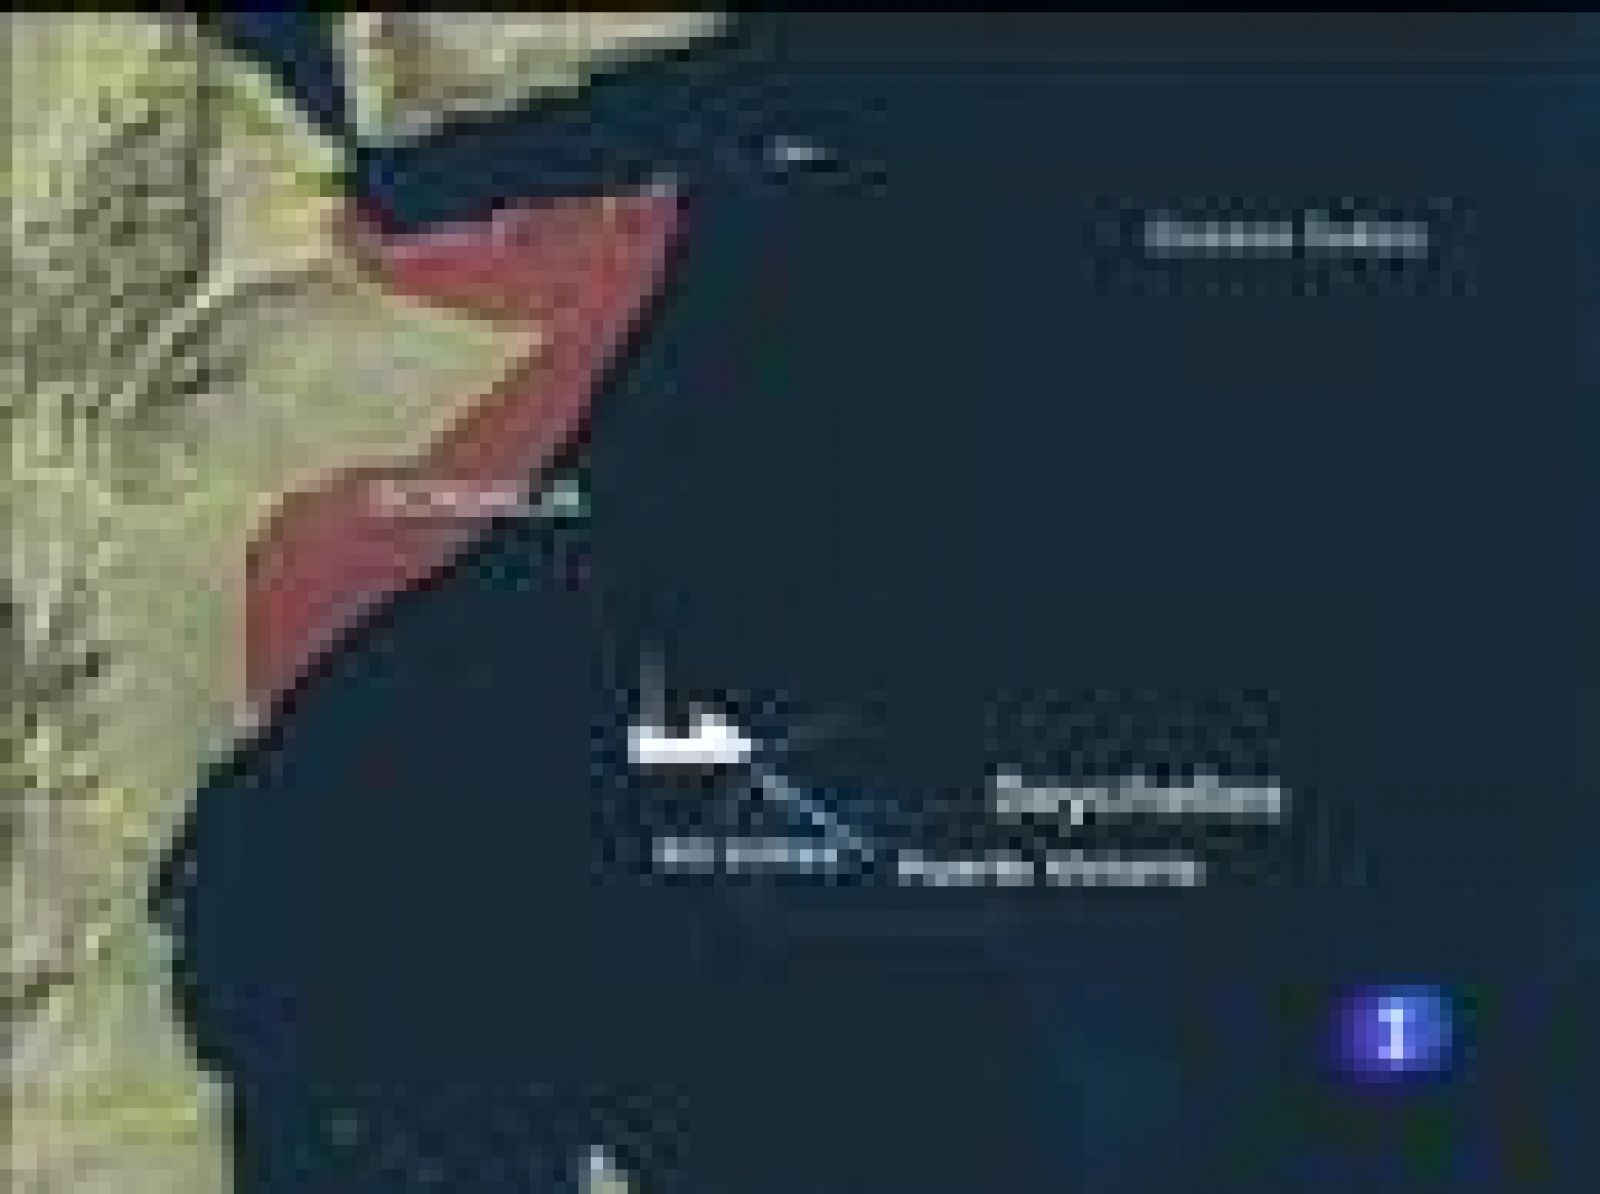  Ataque frustrado en las Seychelles a un atunero español